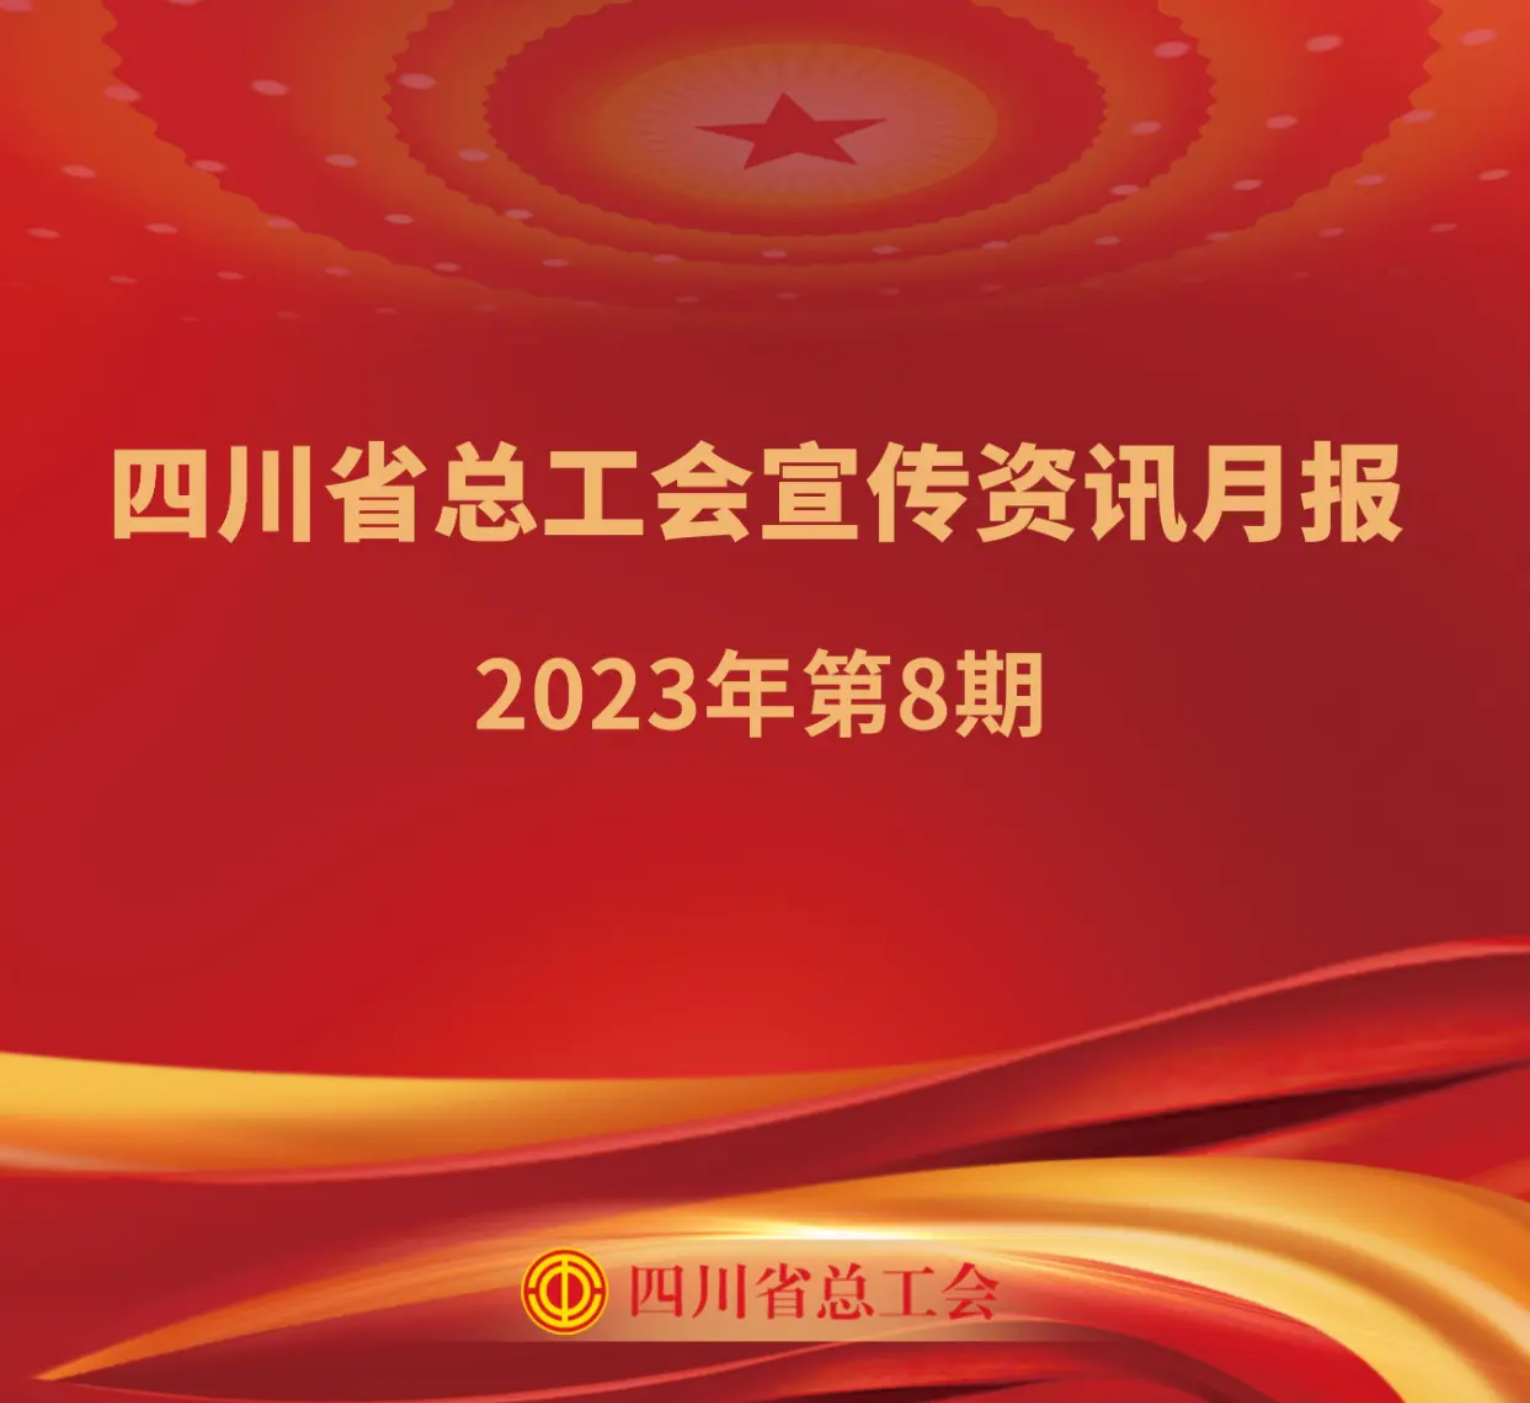 四川省总工会宣传资讯月报2023年第8期